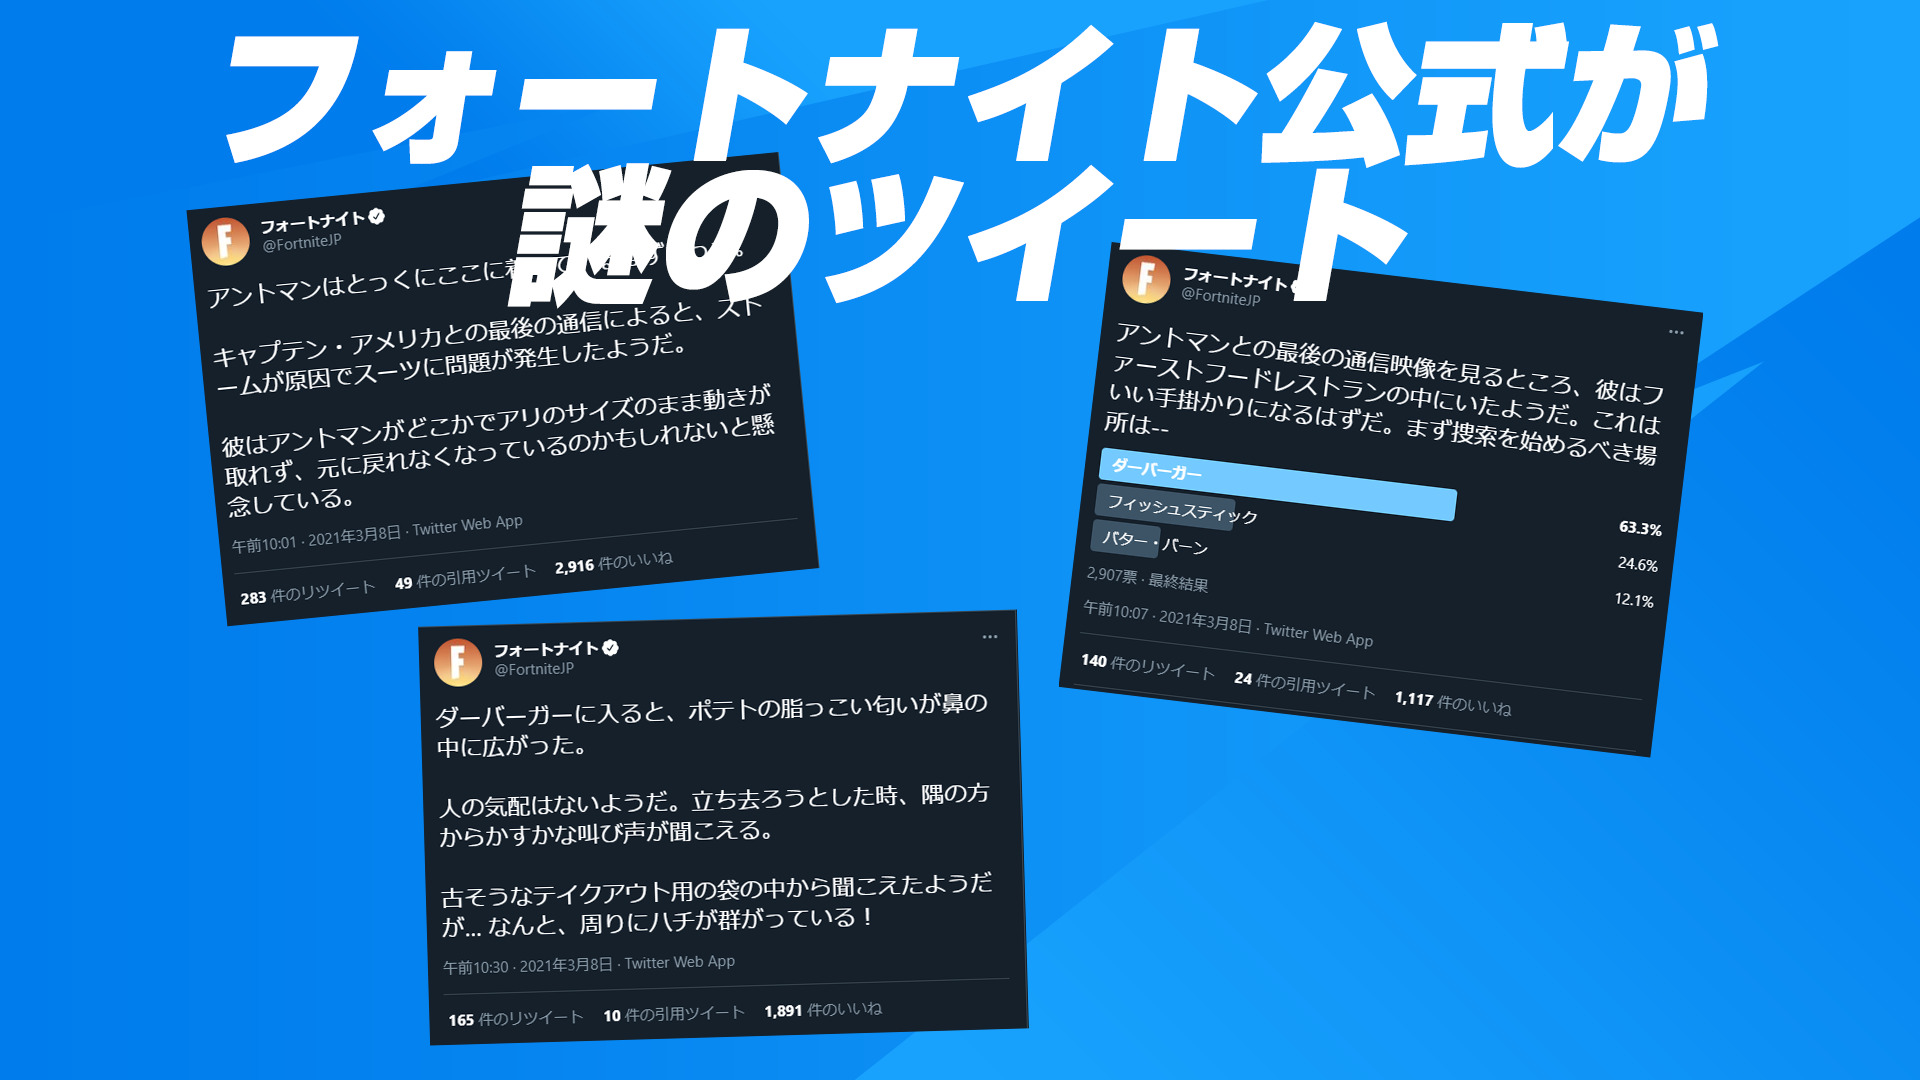 【フォートナイト】突如、日本のフォートナイト公式がアントマンに関するツイートとアンケートを...？何かの線上なのか？